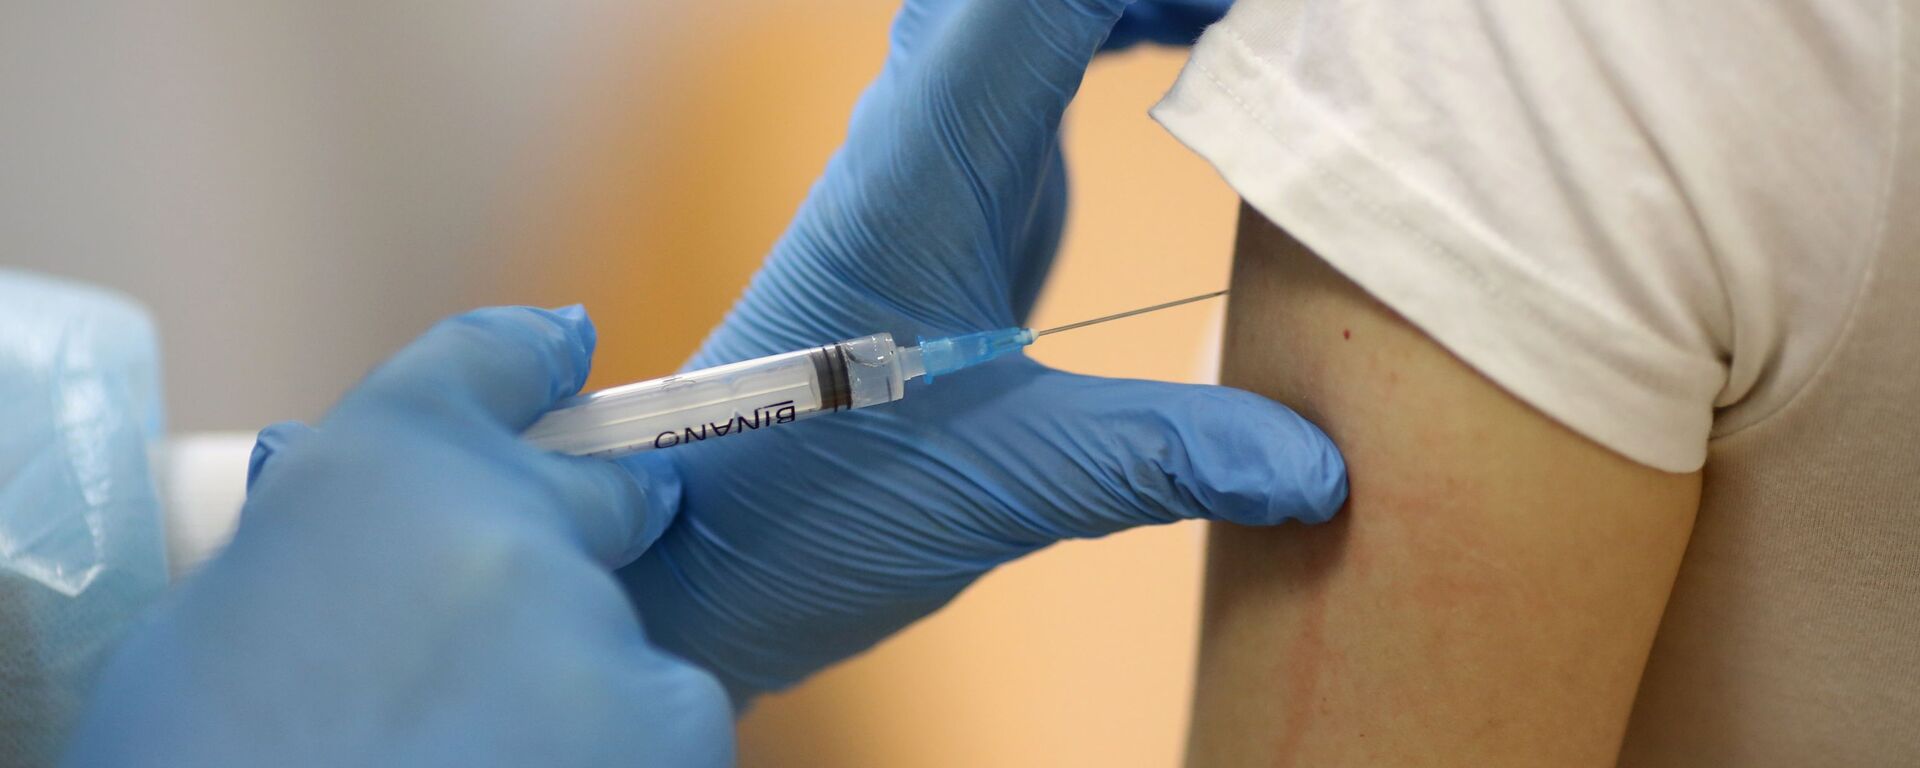 Inyección de una vacuna (imagen referencial) - Sputnik Mundo, 1920, 01.02.2021